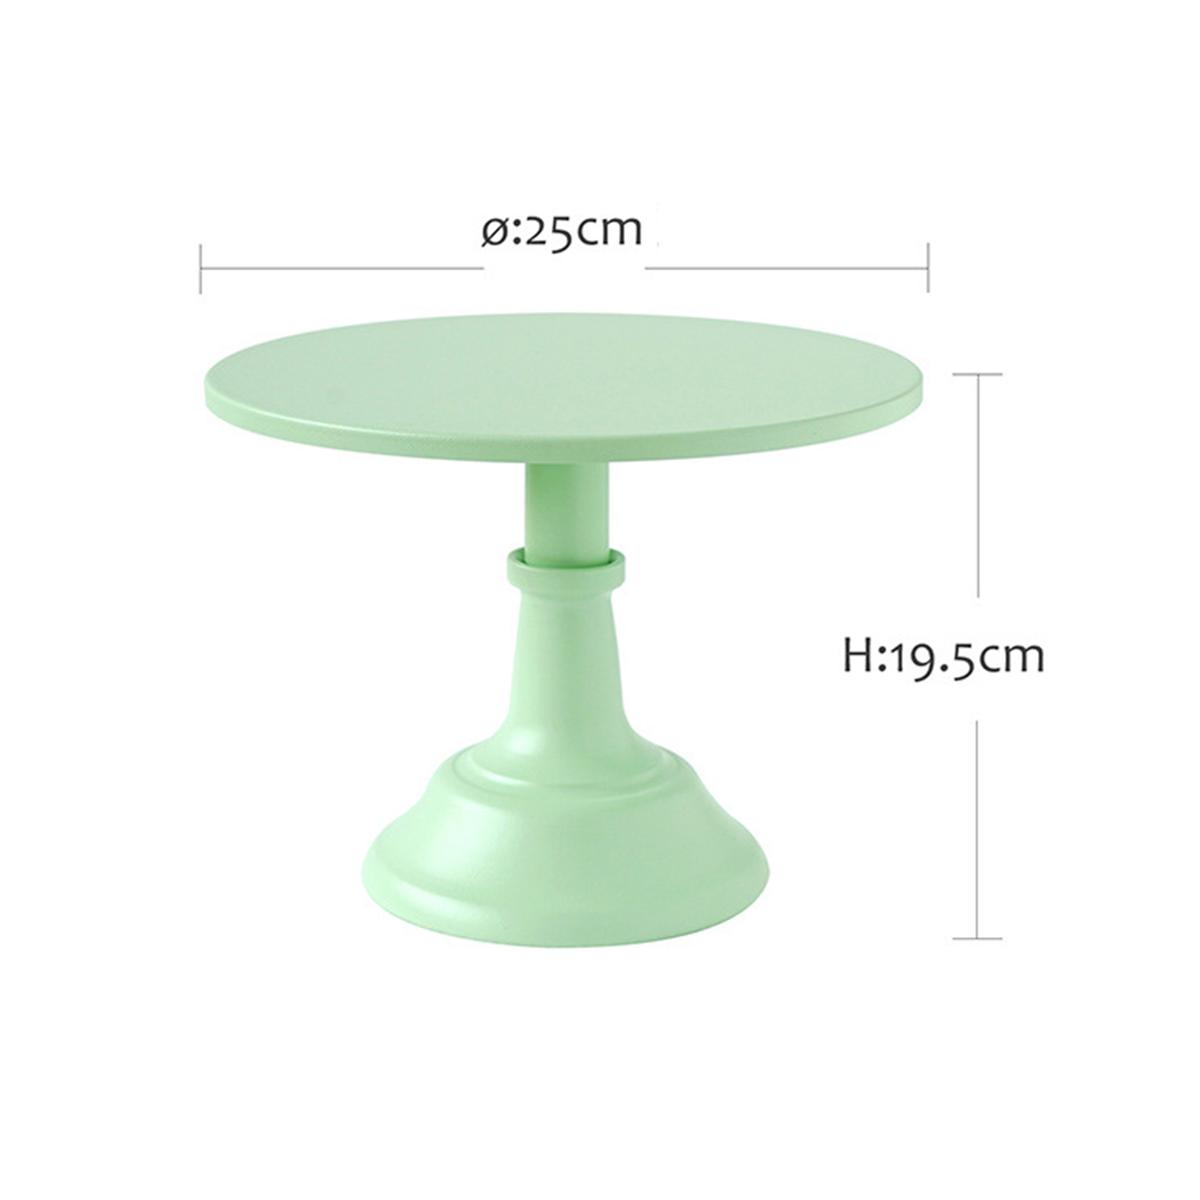 1012-Inch-Iron-Green-Round-Cake-Stand-Pedestal-Dessert-Holder-Wedding-Party-Decorations-1476996